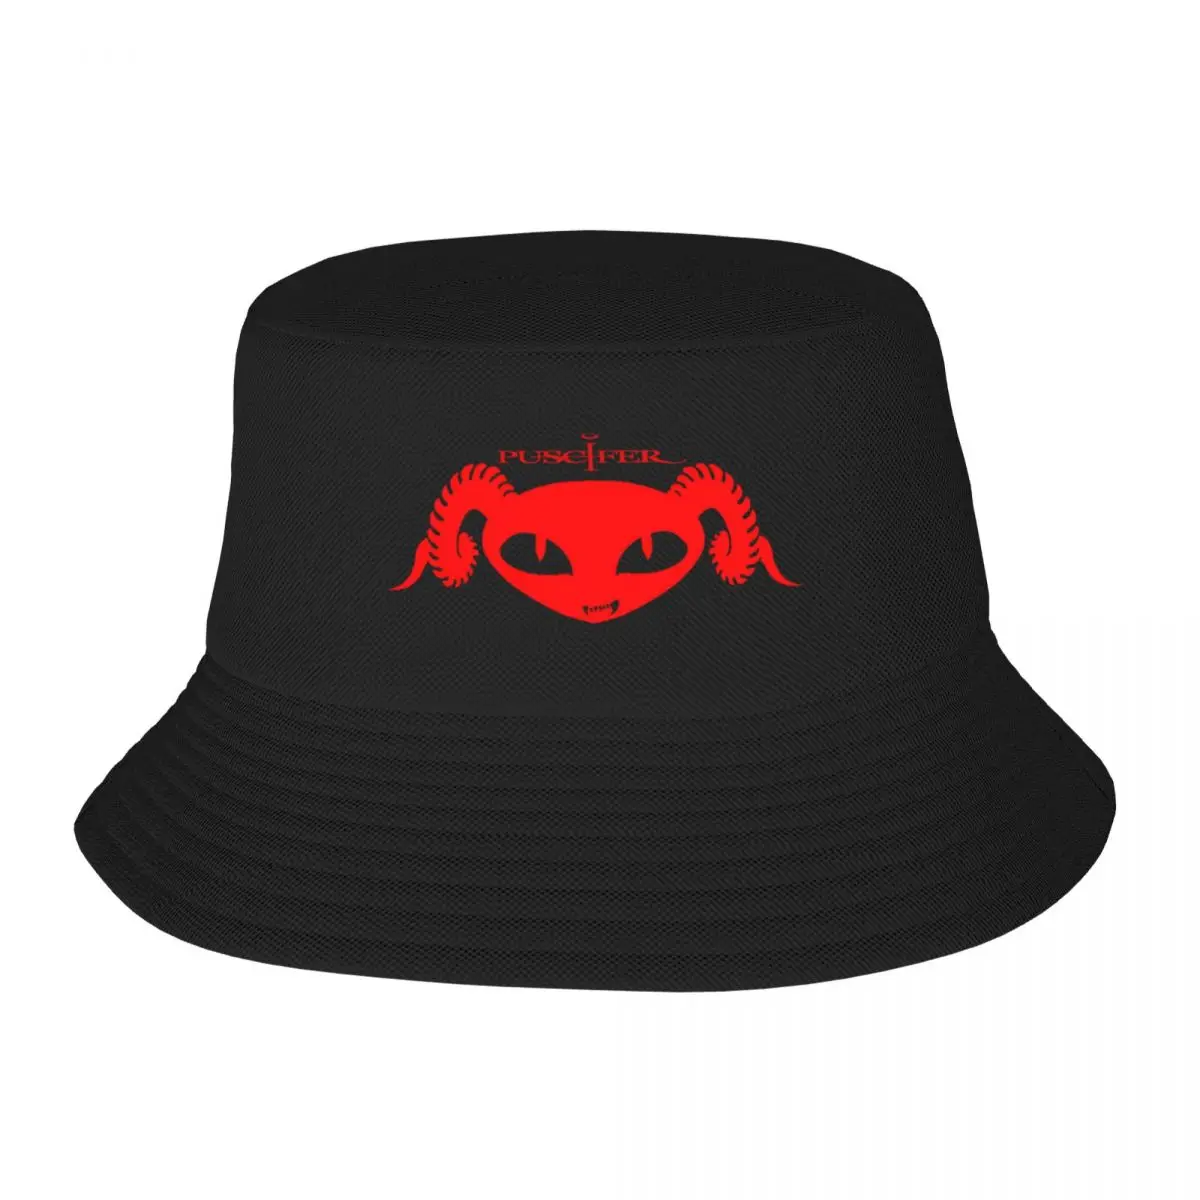 

Новый лучший красный логотип металлическая рок-группа puscifer gajiumr Панамка шляпа роскошный бренд пляжная модная термокозырек мужская шляпа женская